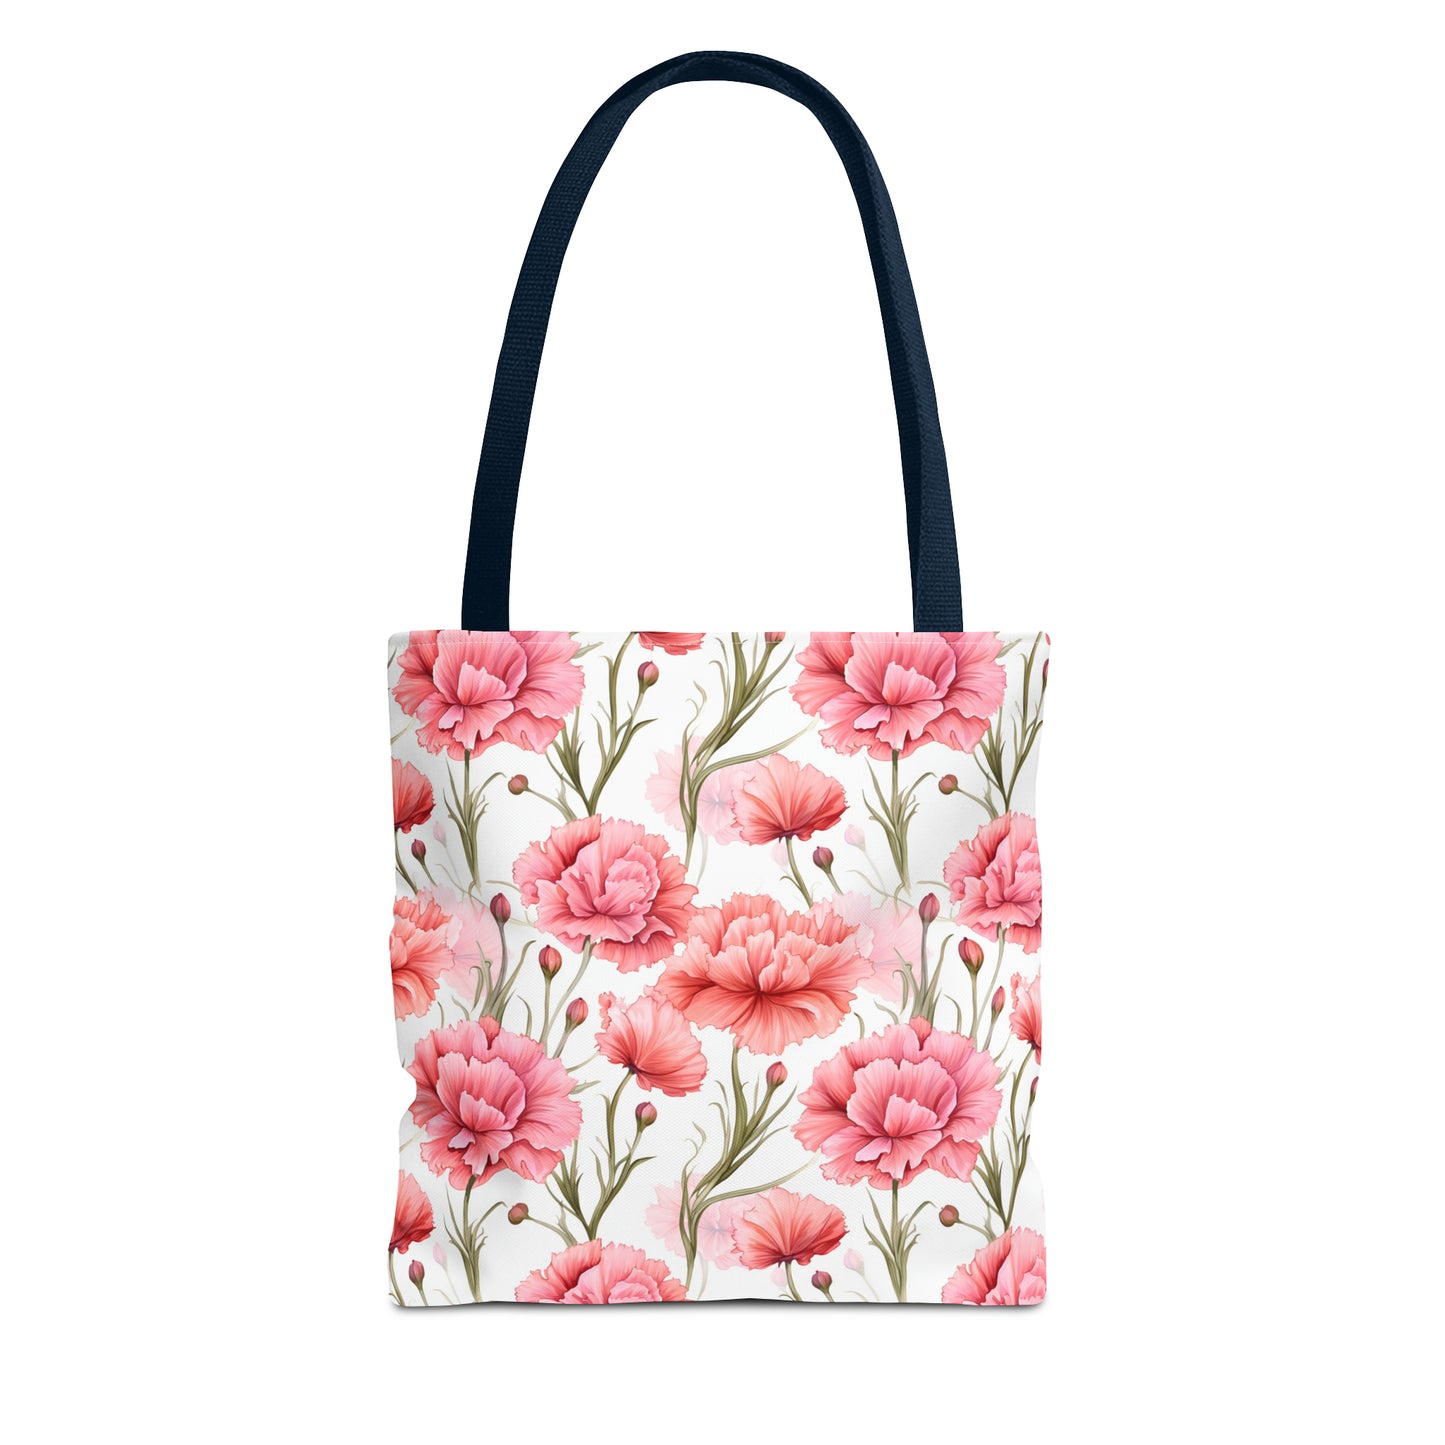 Pastel Blooms Carnation Tote Bag (13" x 13")